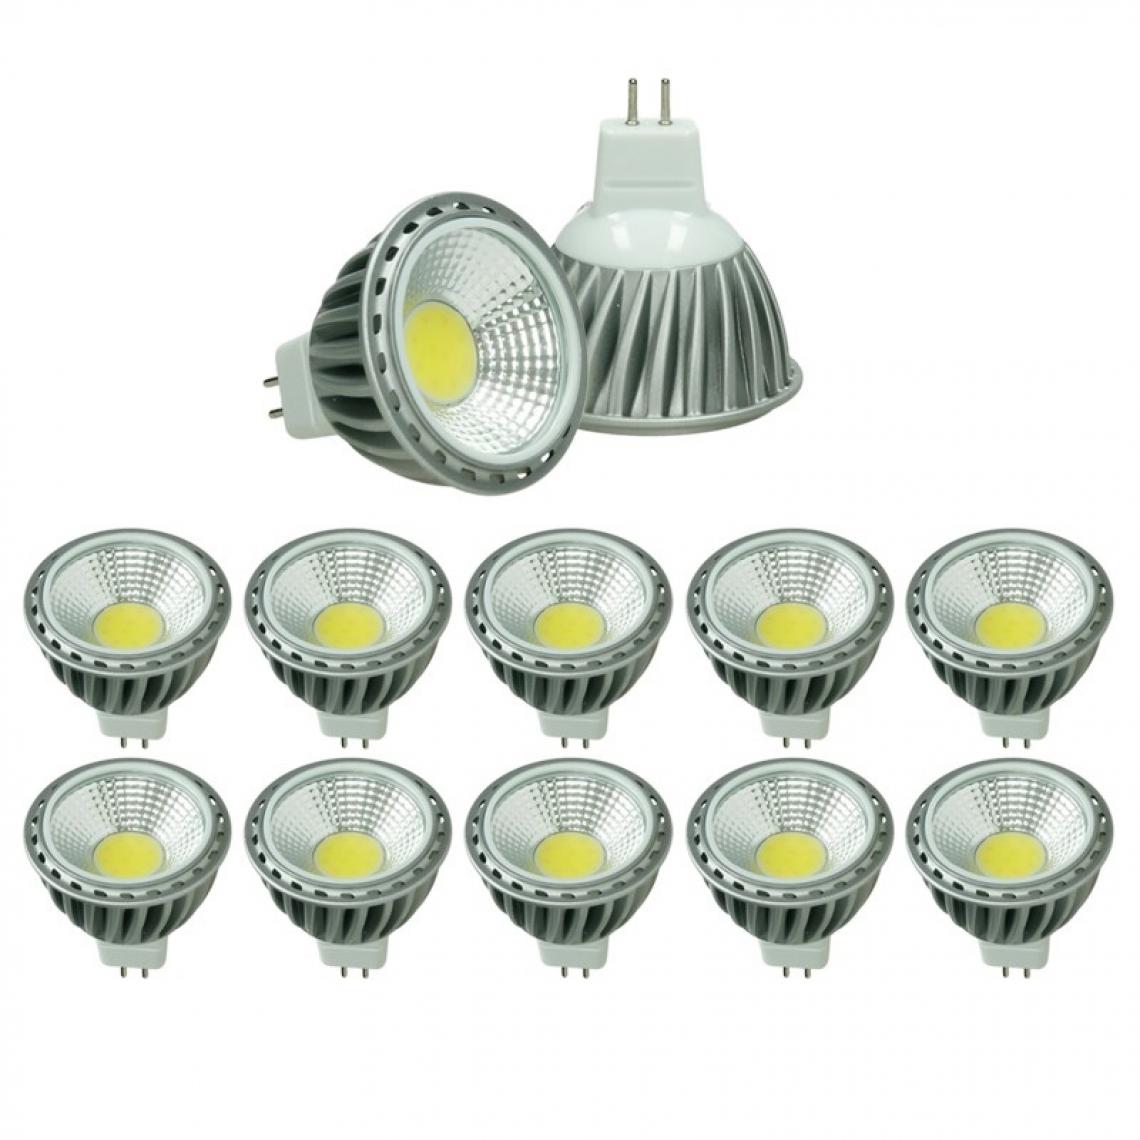 Ecd Germany - ECD Germany 10 x MR16 COB Spot 6W Haute-Puissance Lampe d'économie d'énergie d'environ 378 lumens remplace Ampoule halogène 45W angle de faisceau 60 ° Blanc Chaud 2800K - Ampoules LED